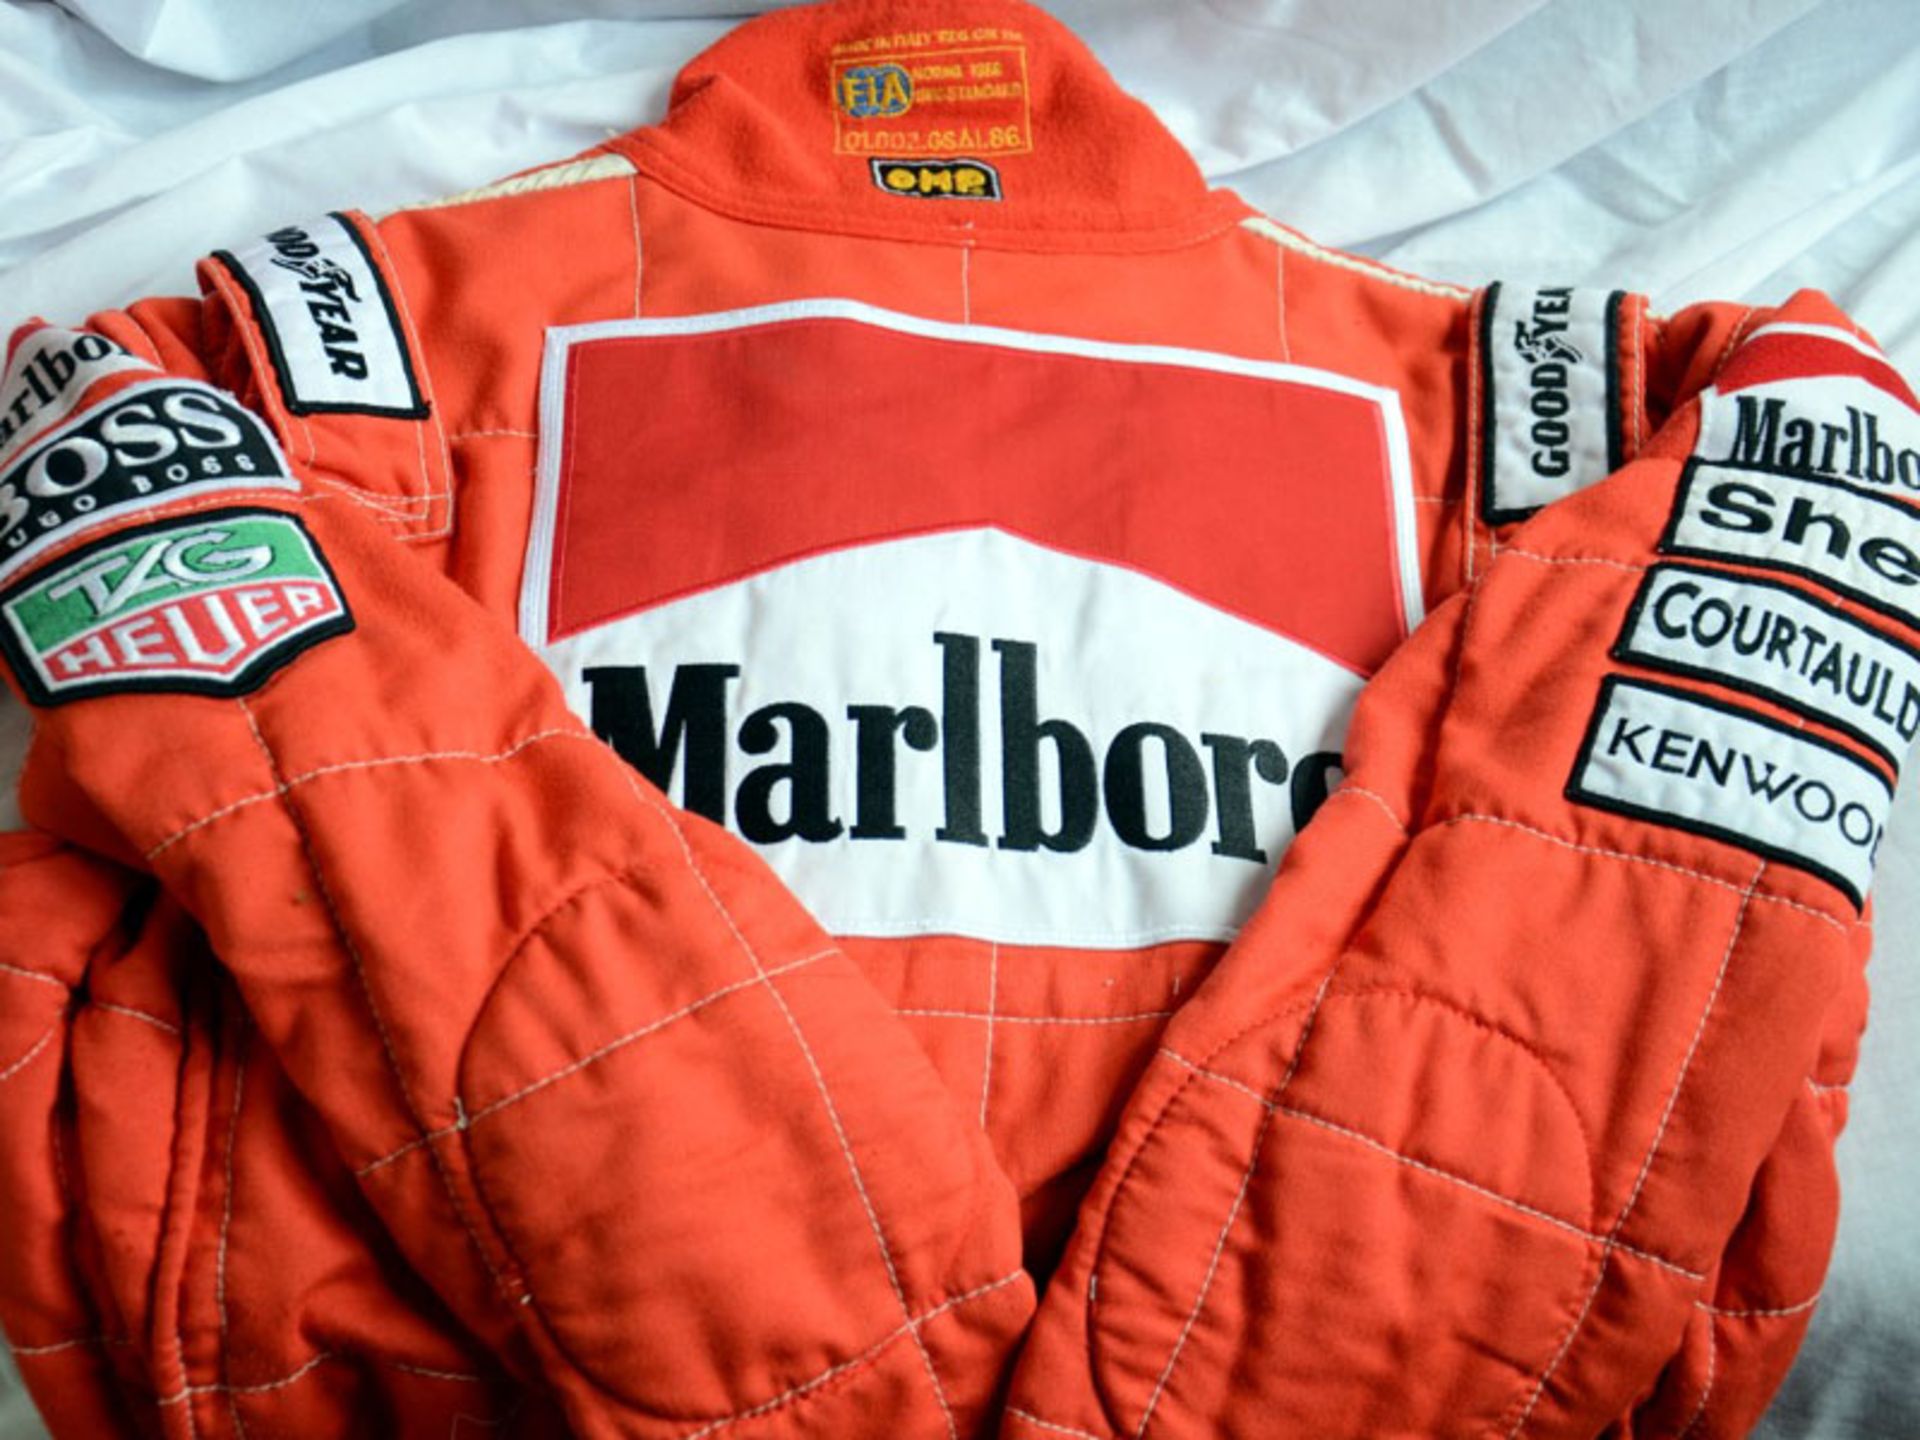 Mika Hakkinen's McLaren F1 Race Suit - Image 2 of 2